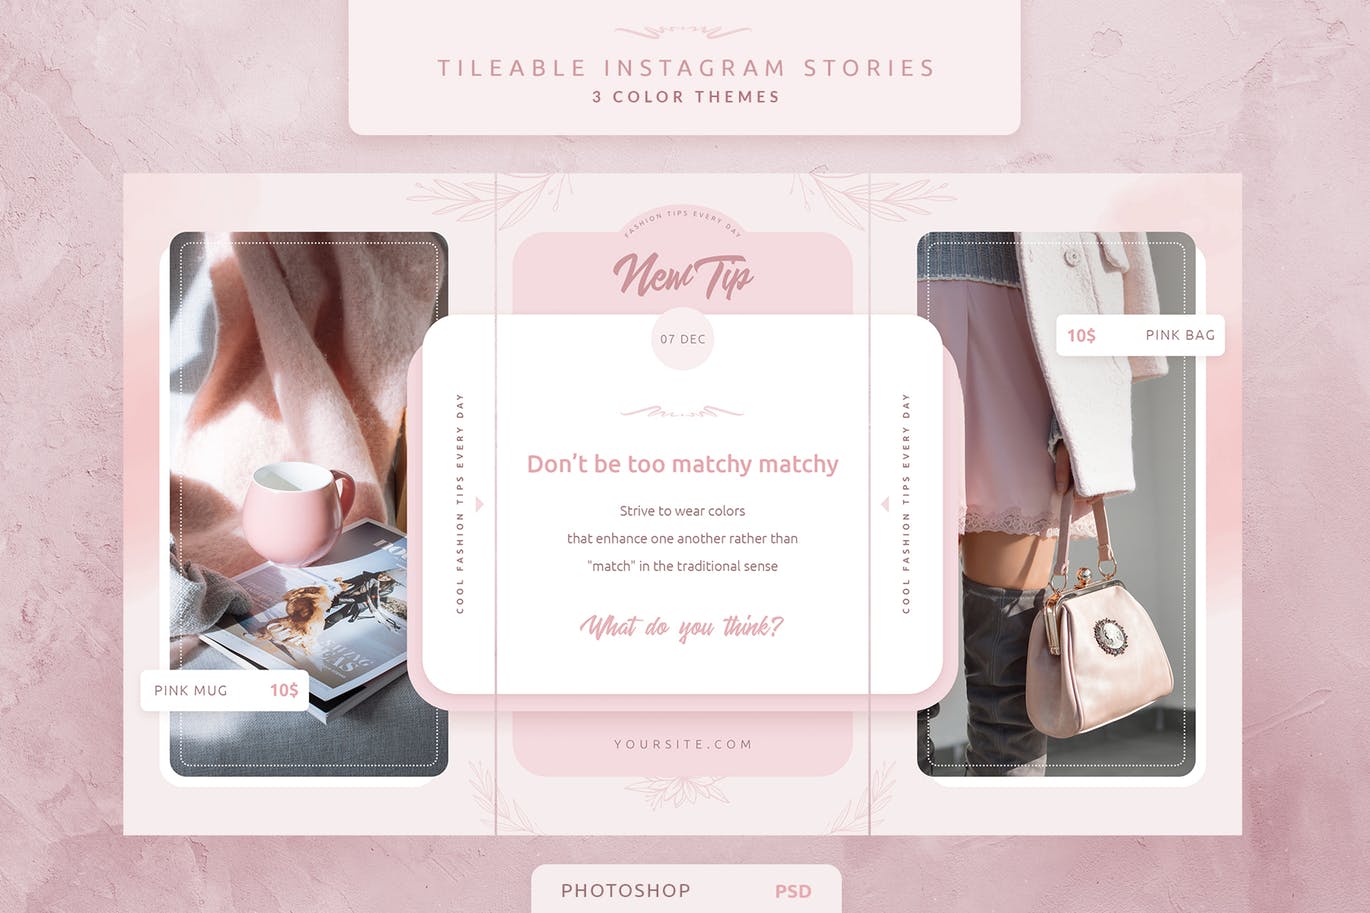 创意三列式Instagram社交品牌故事设计模板素材库精选 Tileable Instagram Stories插图